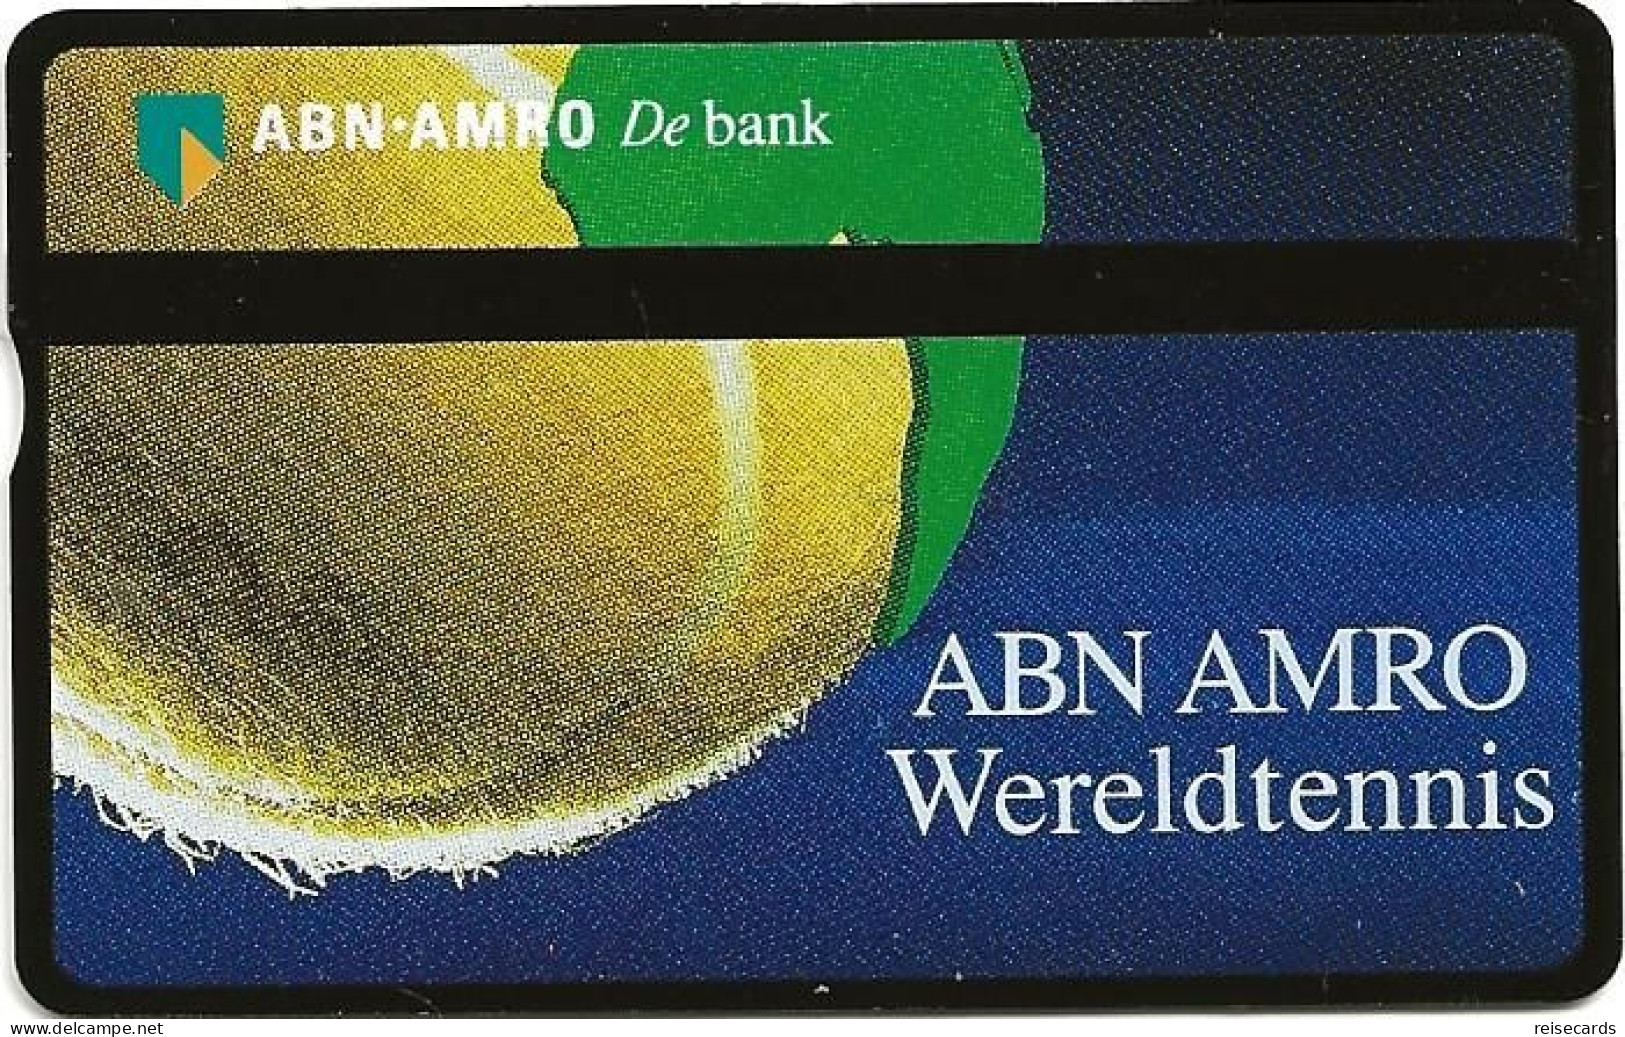 Netherlands: Ptt Telecom - ABN AMRO Bank - Wereldtennis - Public